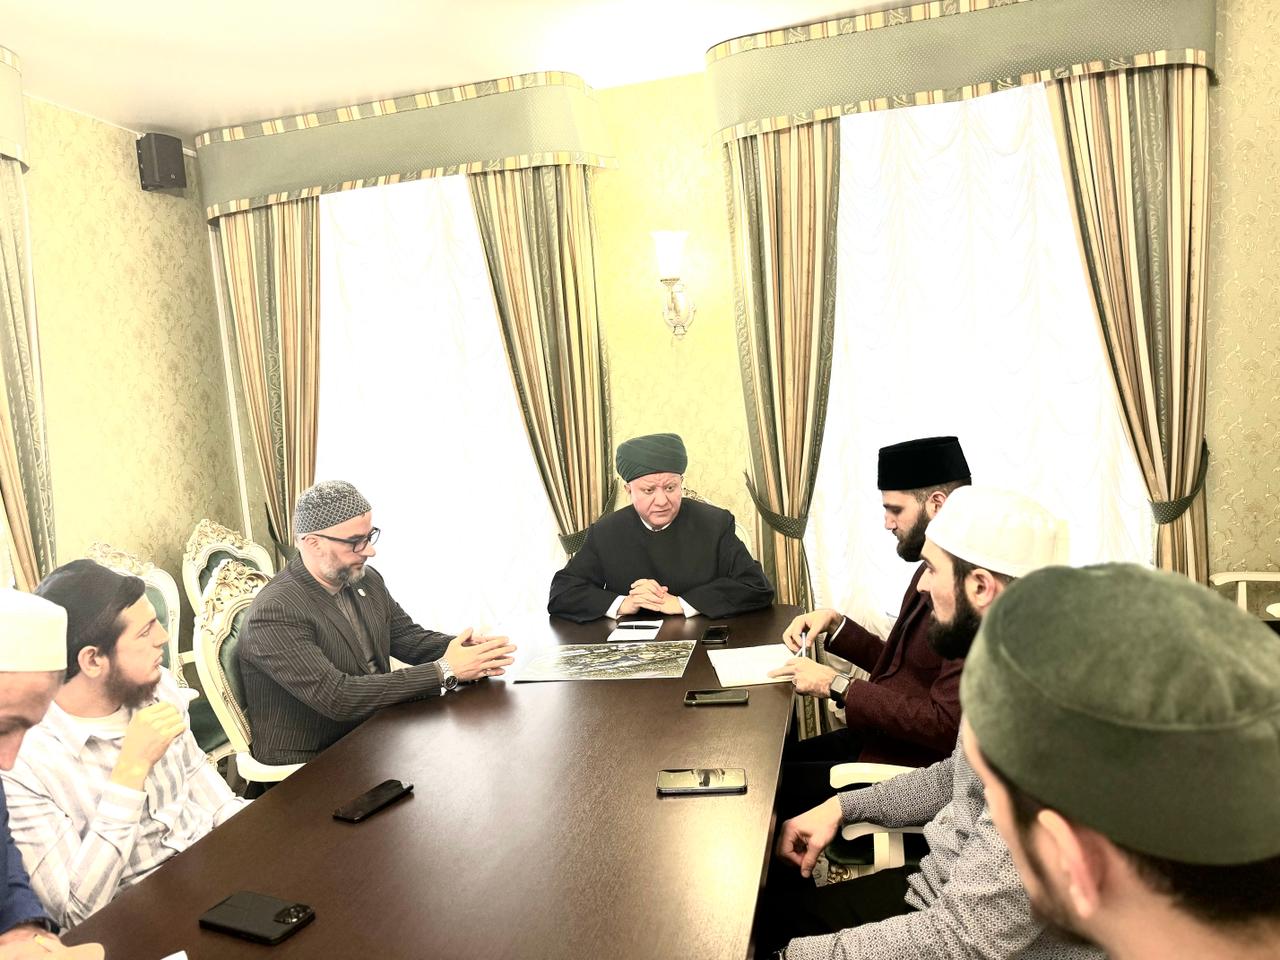 عقد اجتماع الجمعية الدينية لمسلمي منطقة موسكو في مقر إقامة الجمعية الدينية لمسلمي روسيا